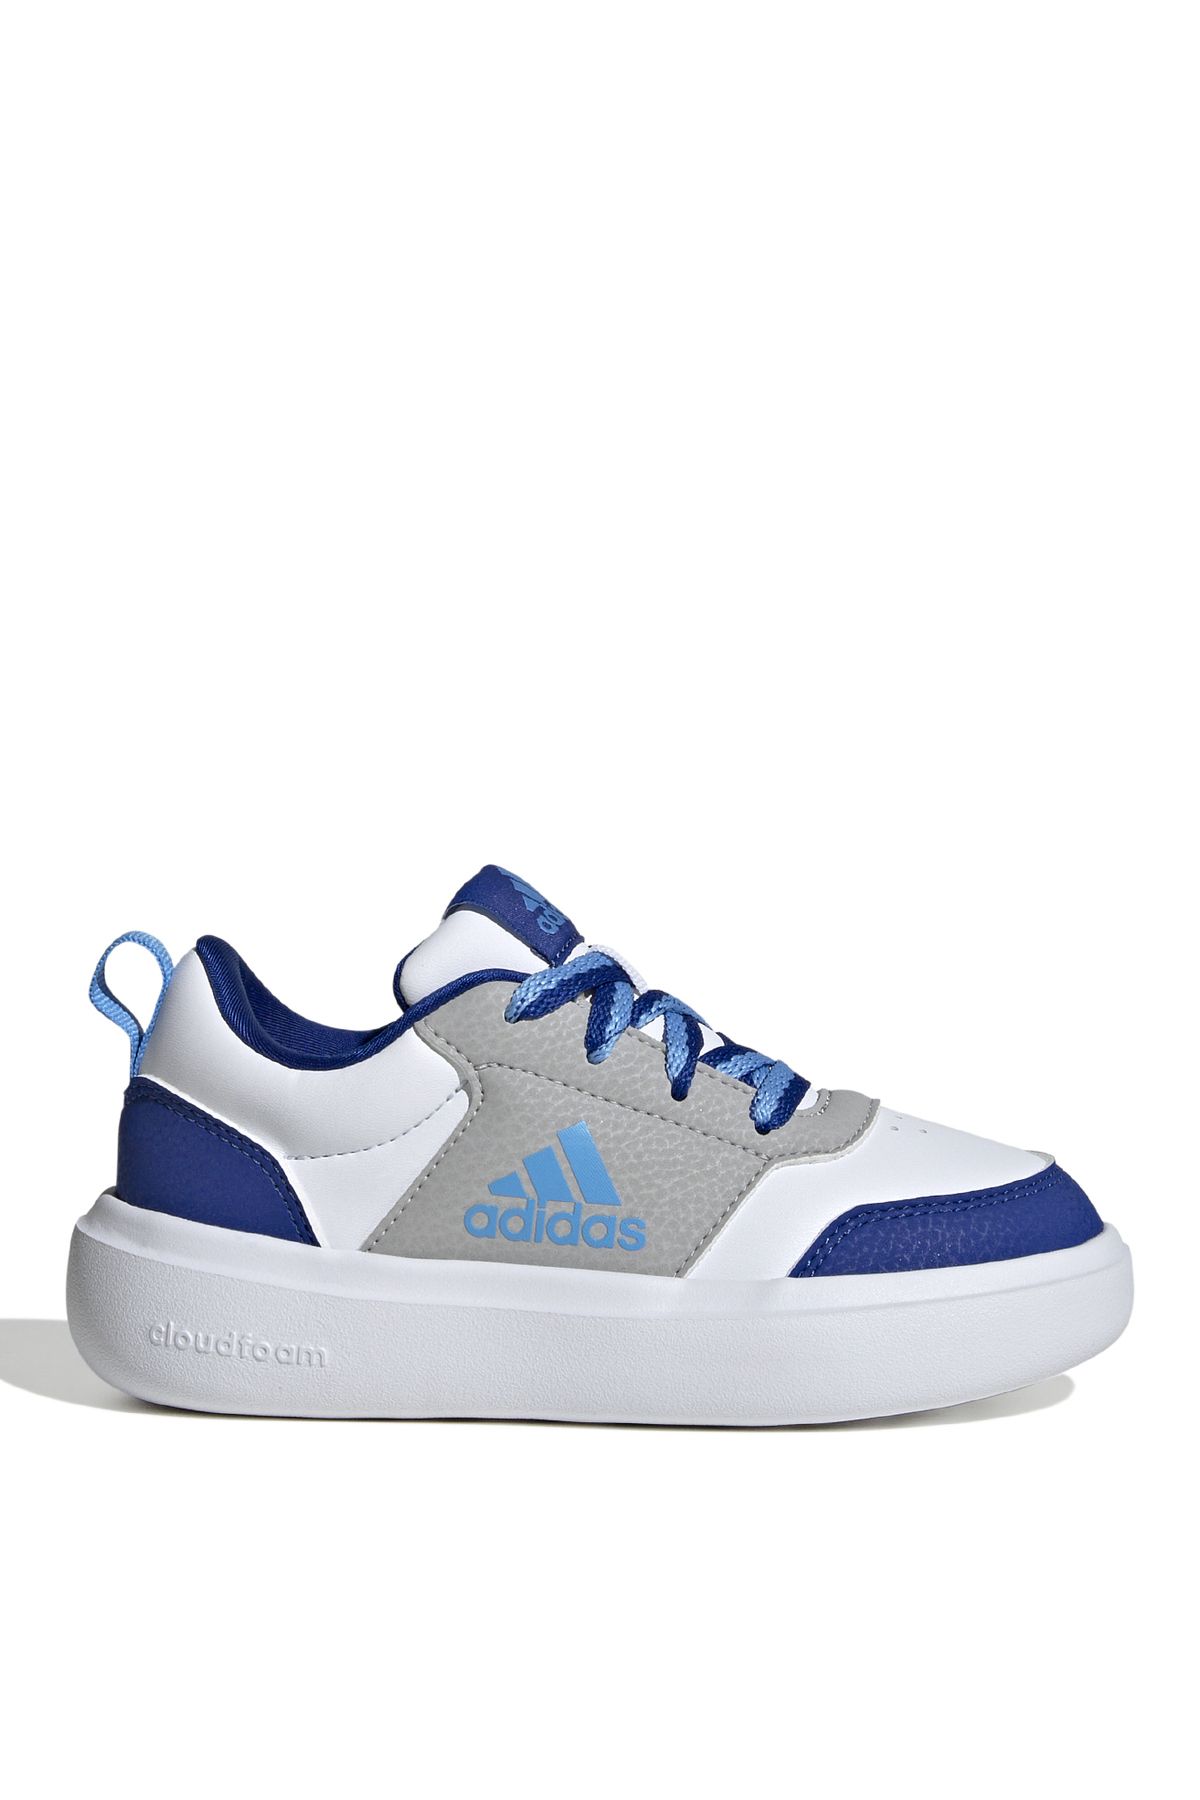 adidas Beyaz Kadın Yürüyüş Ayakkabısı ID7930-PARK ST K